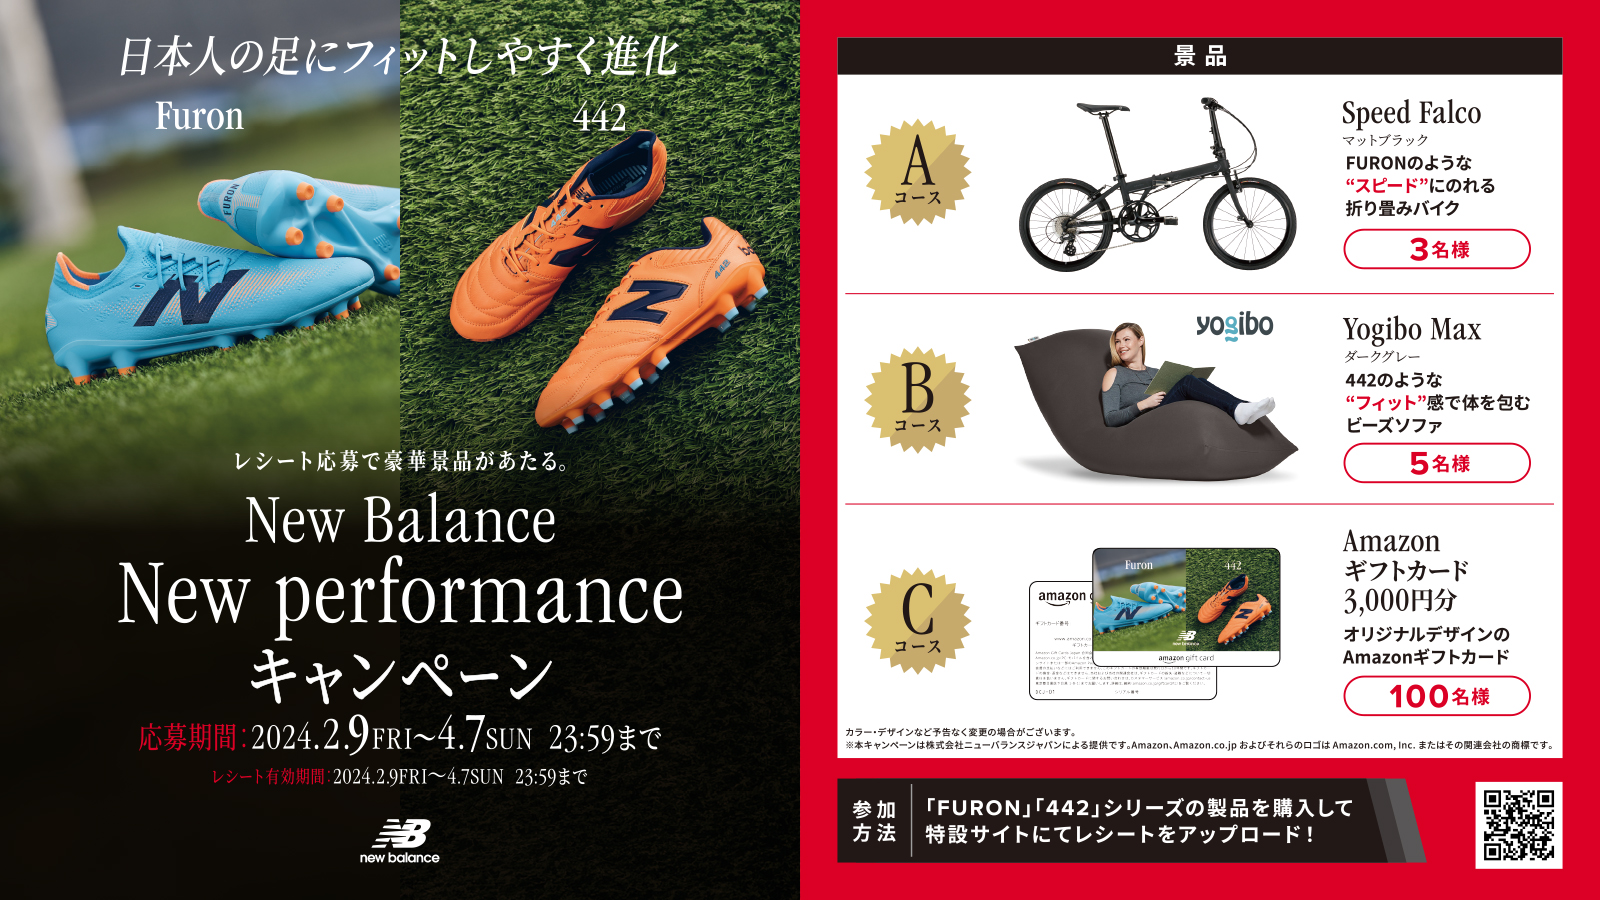 【New Balance(ニューバランス)】New performanceキャンペーン